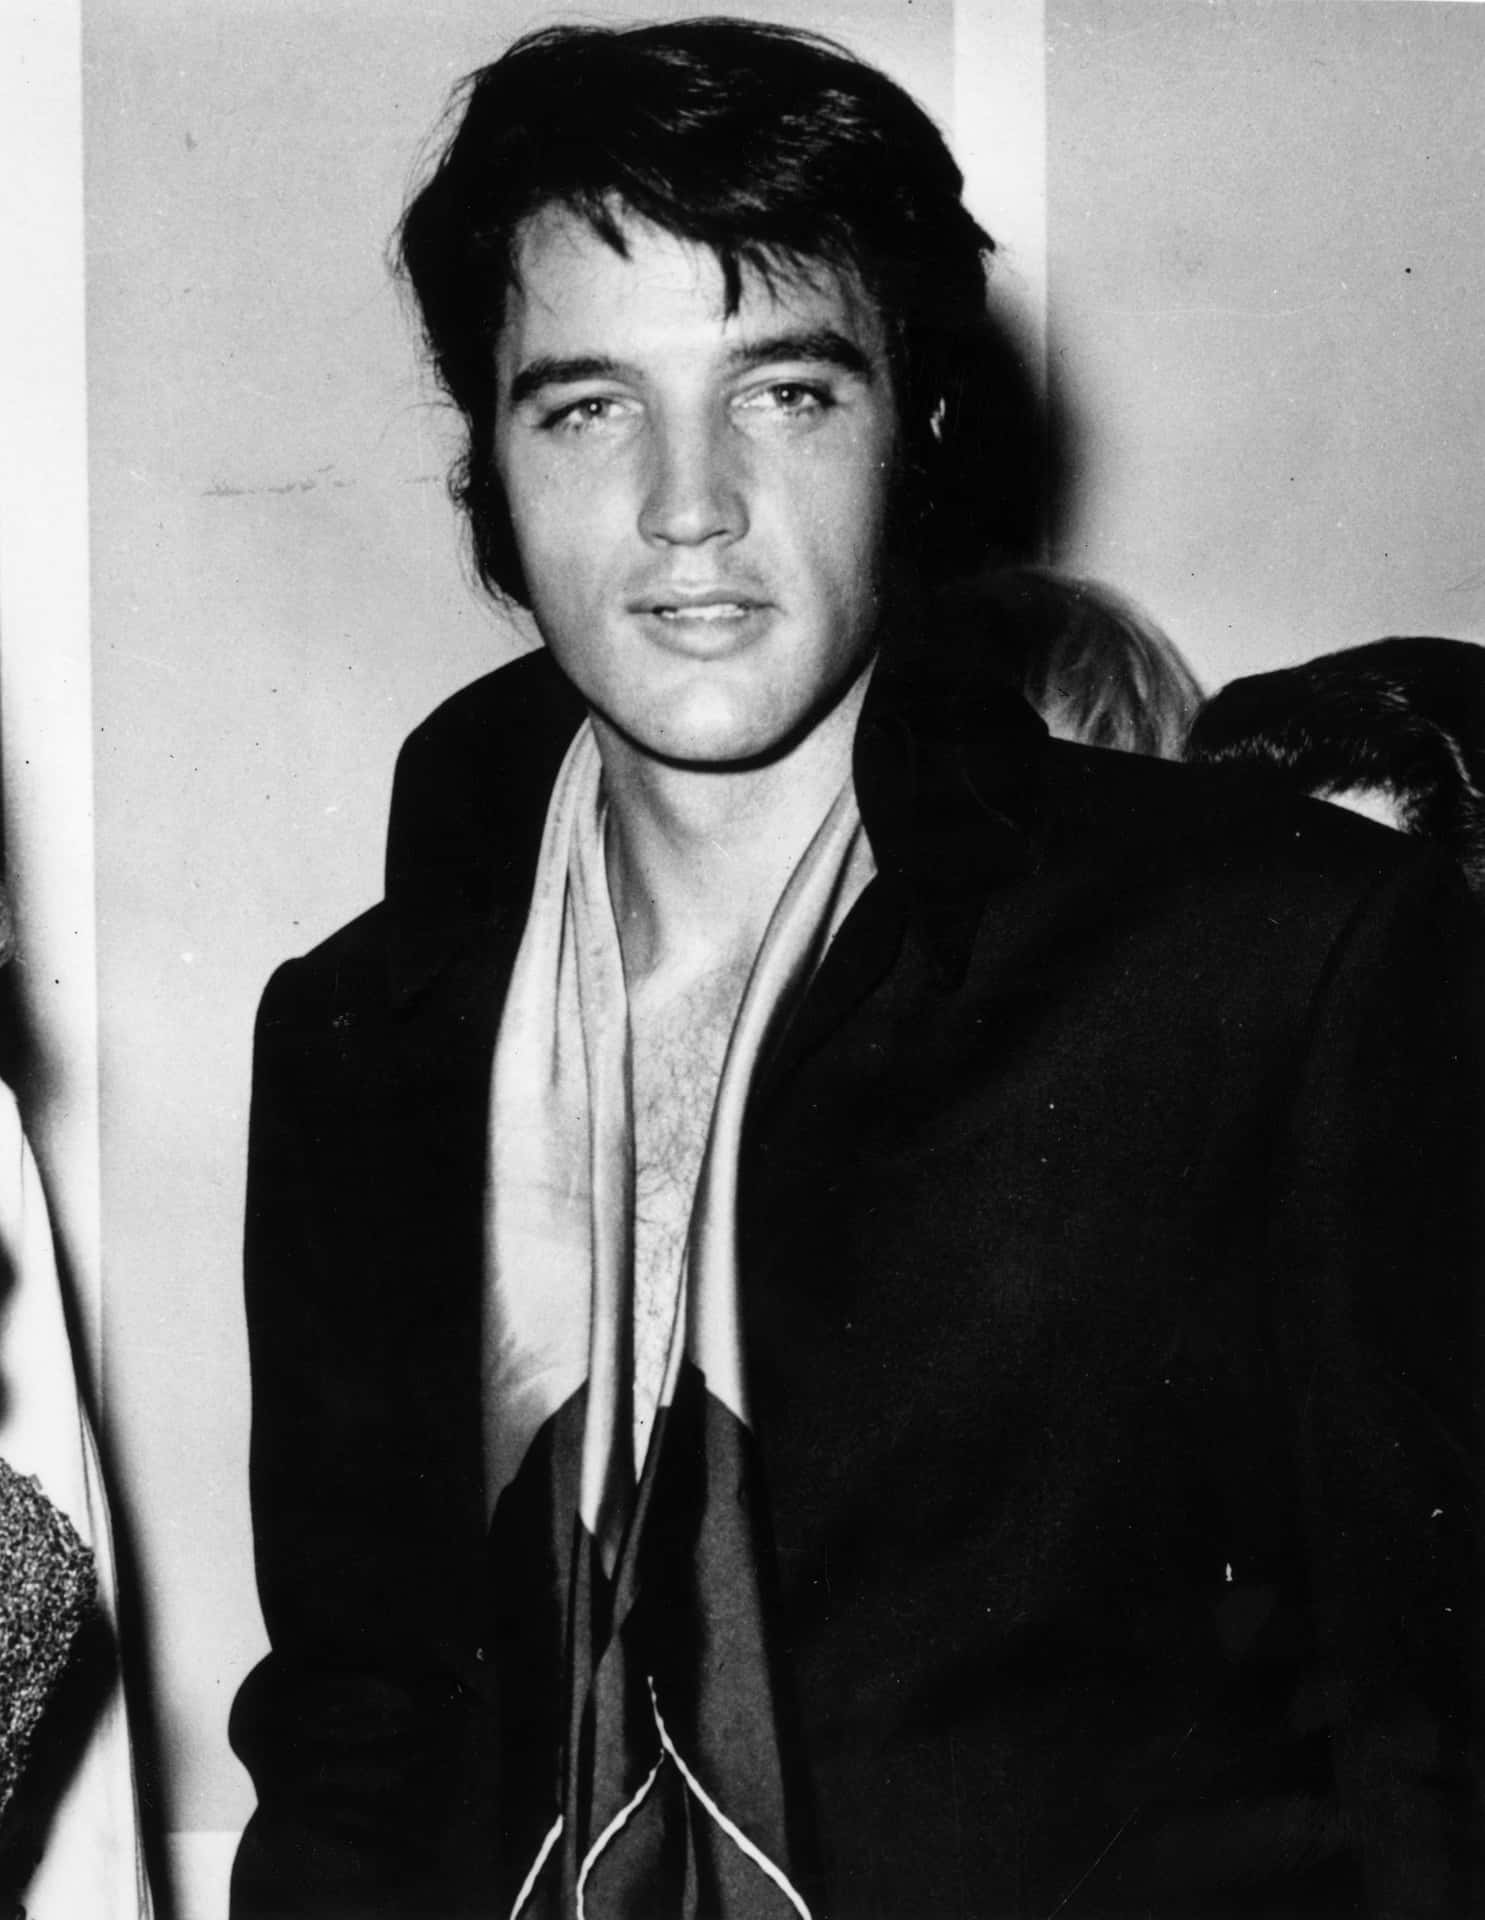 "The King of Rock n' Roll: Elvis Presley in concert"